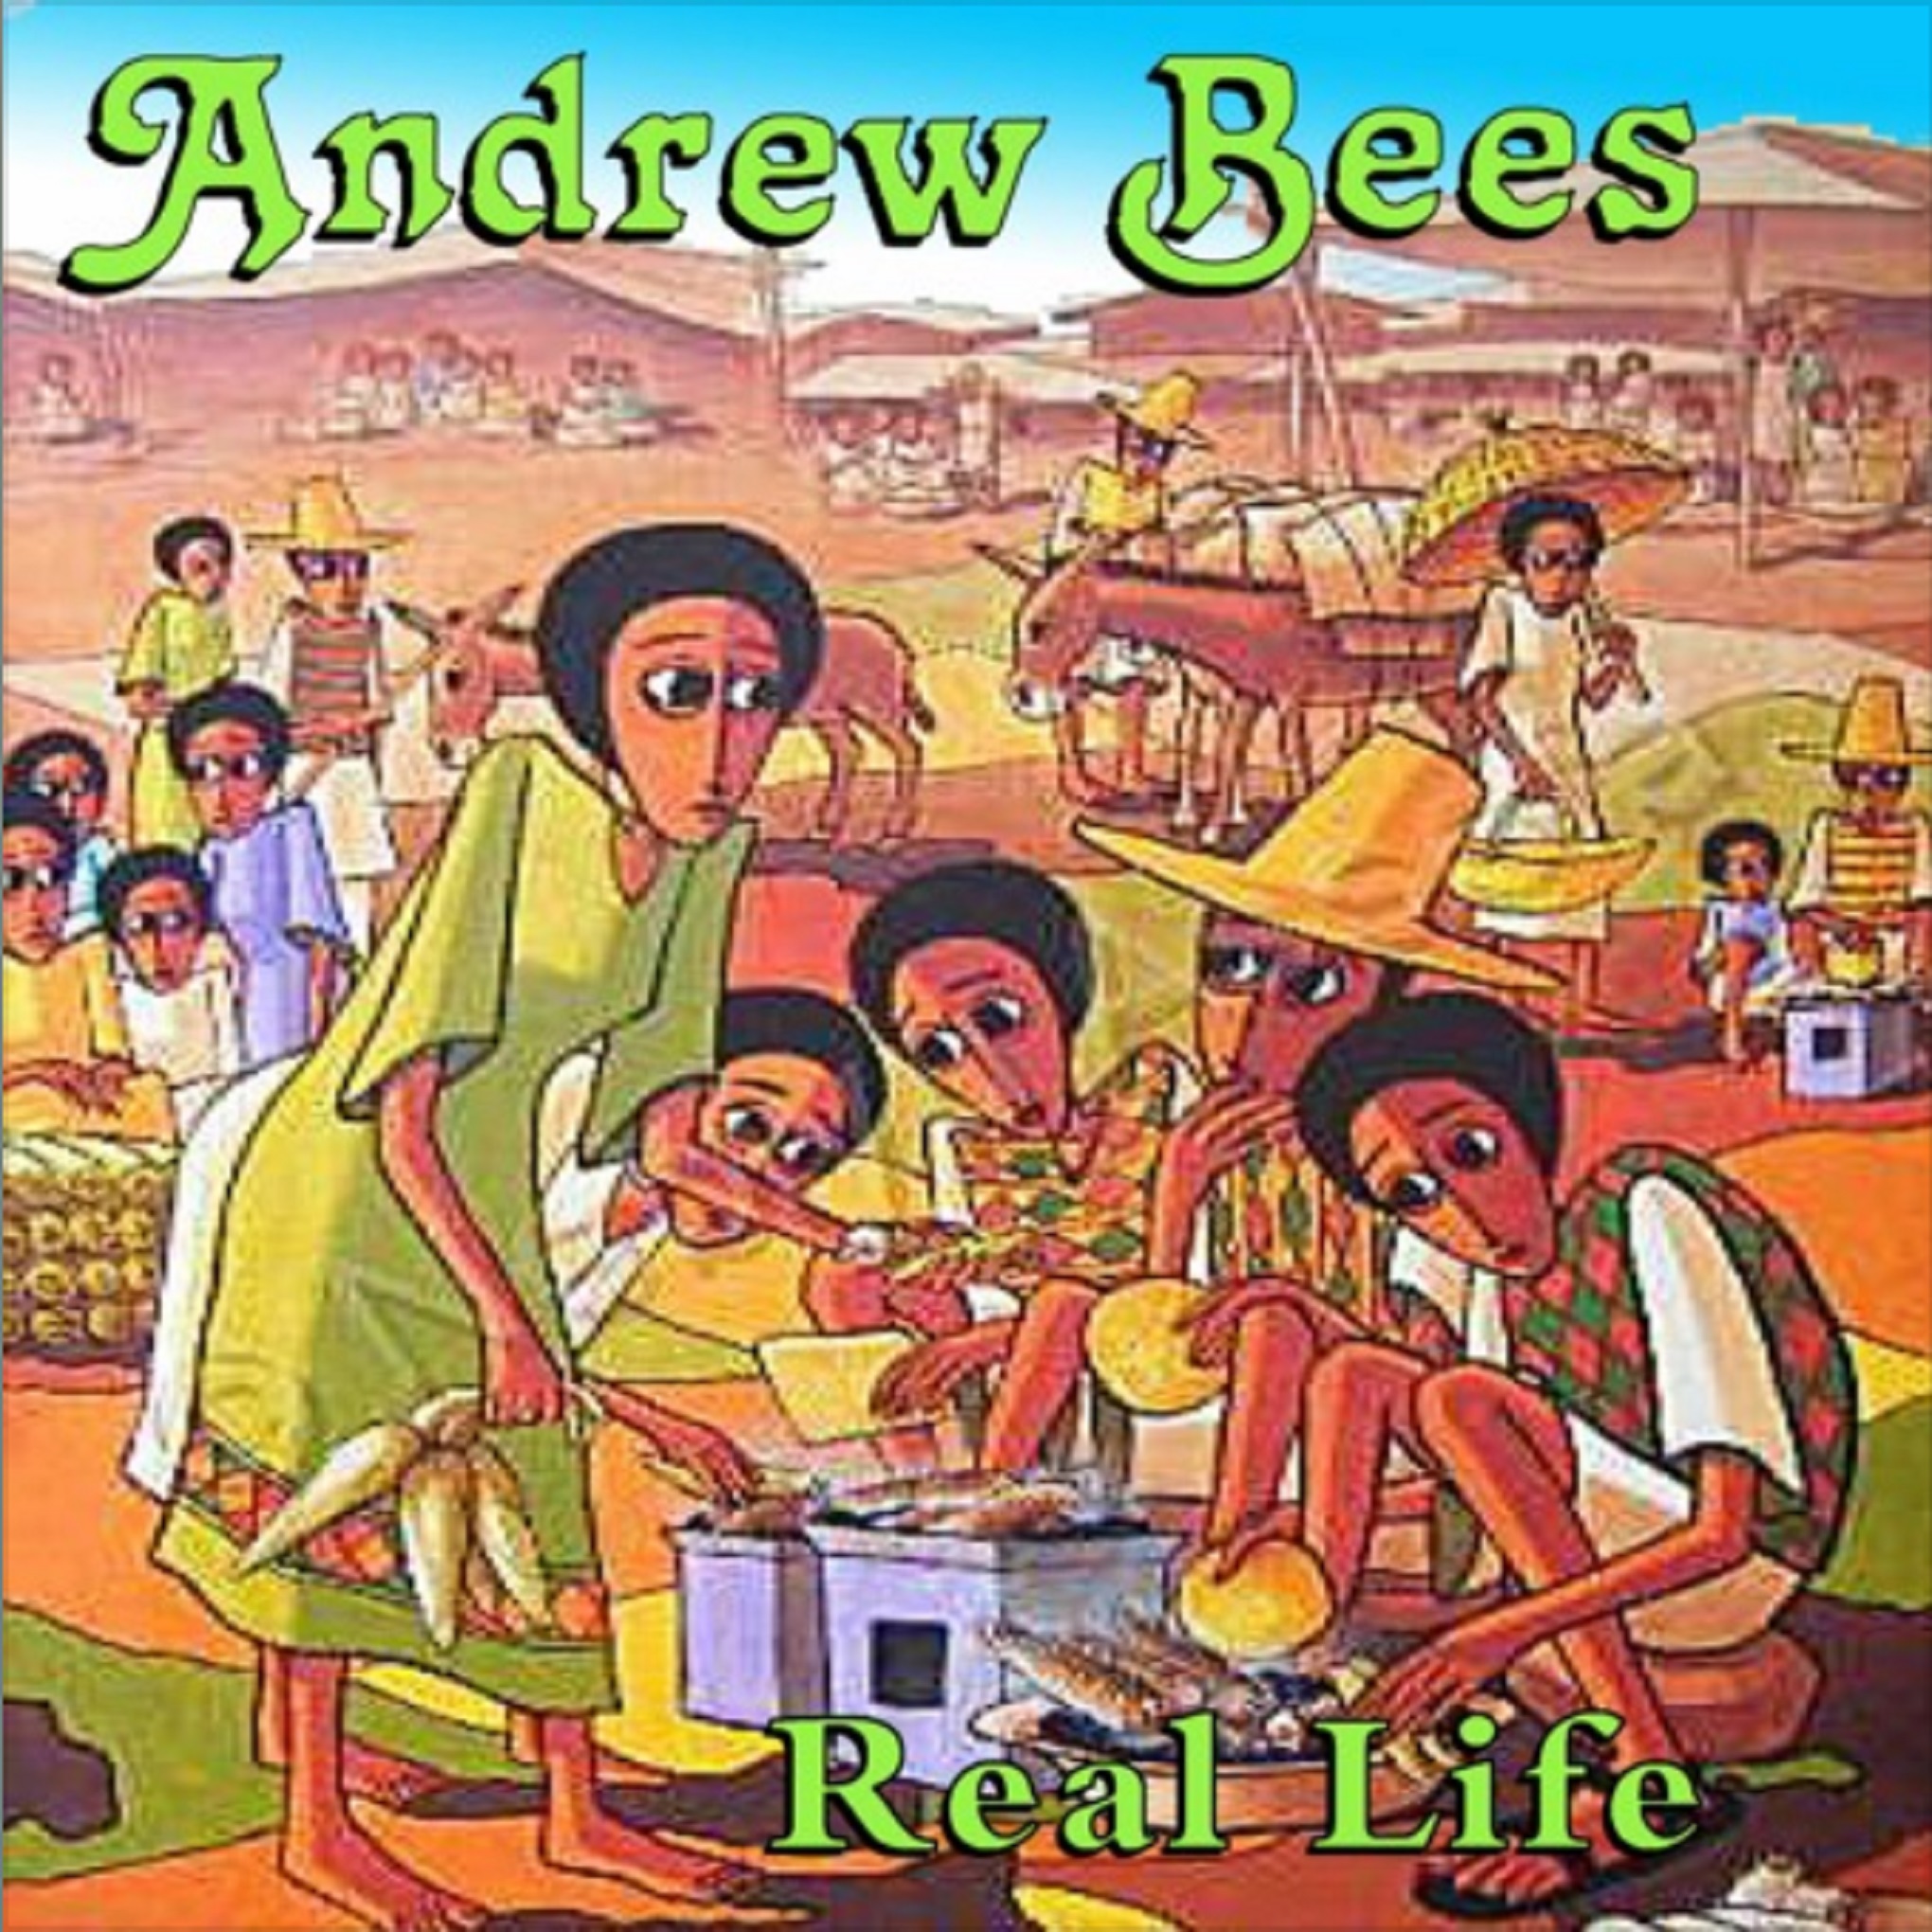 Legendary reggae artist Andrew Bees releases new single 